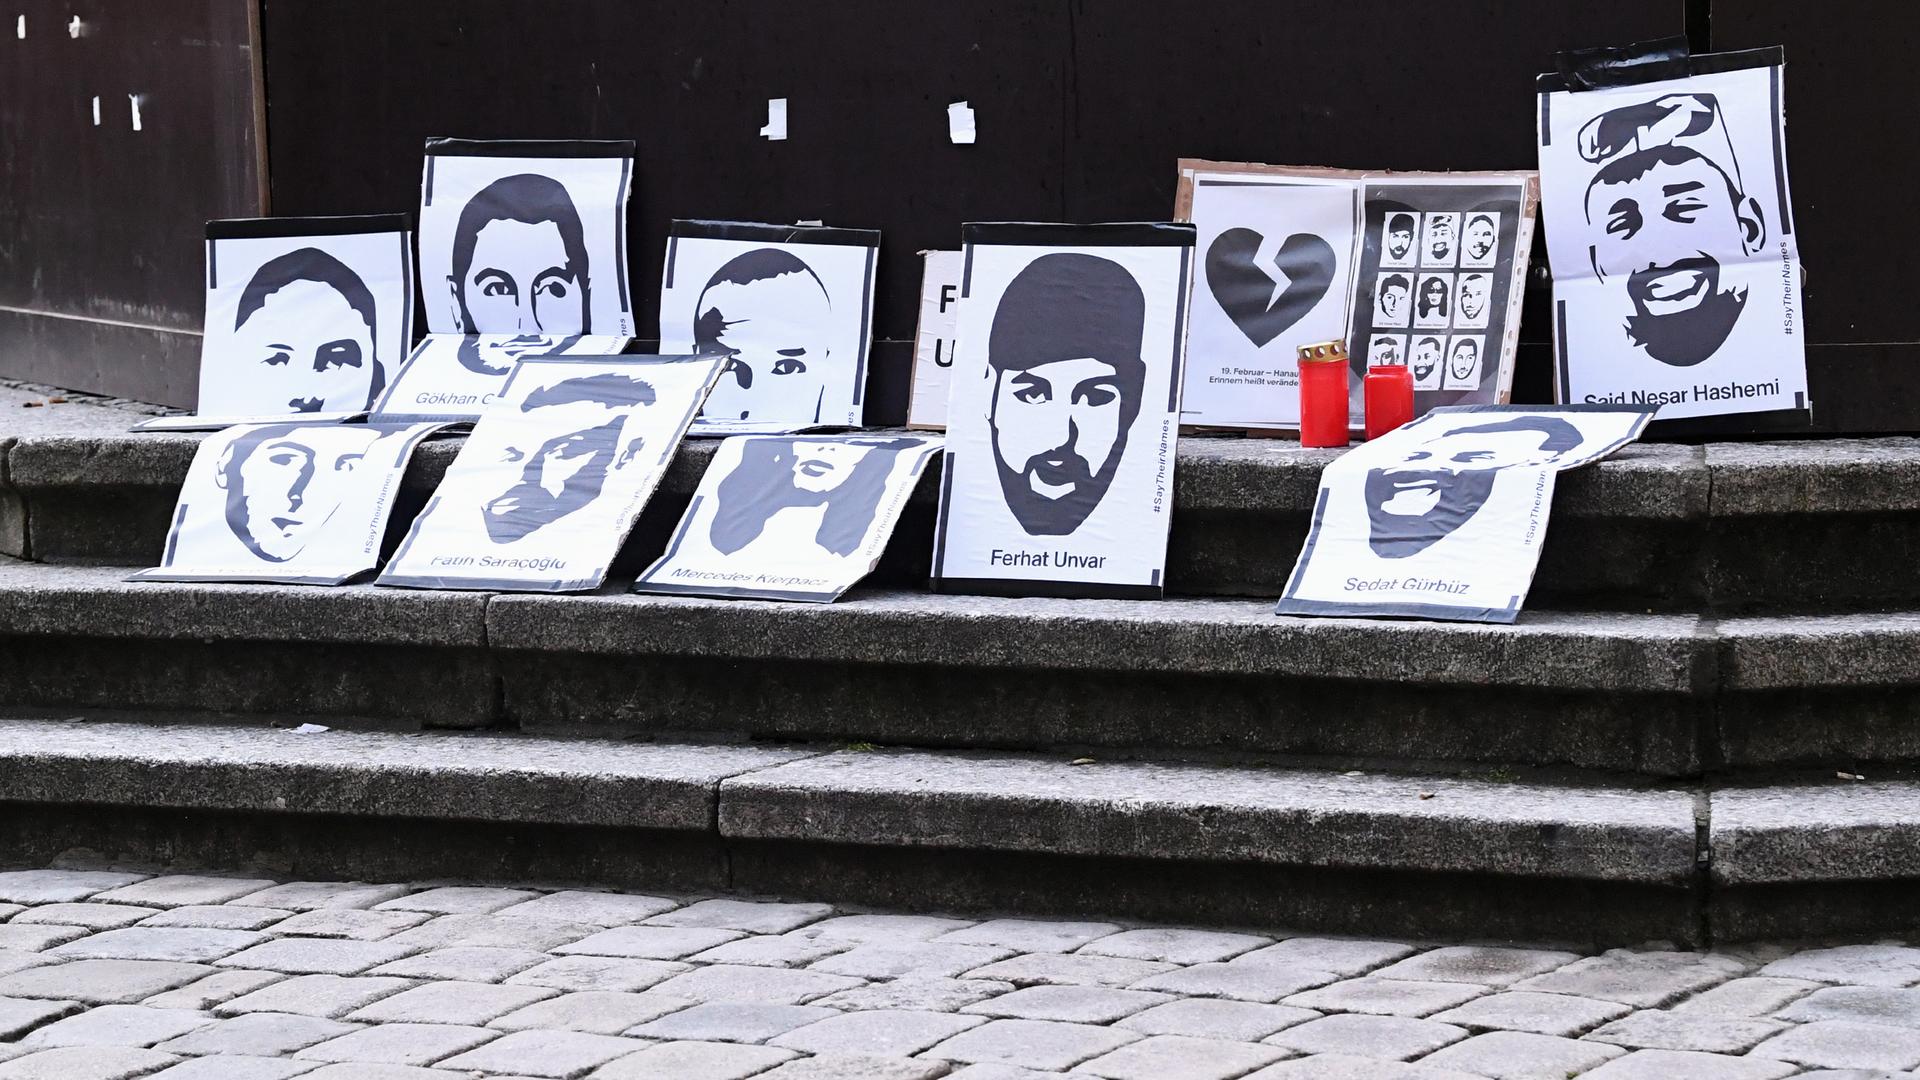 Zum Gedenken an die Opfer des rechts-extremistischen Anschlags in Hanau sind Plakate mit den Gesichtern und Namen der getöteten Menschen aufgestellt.